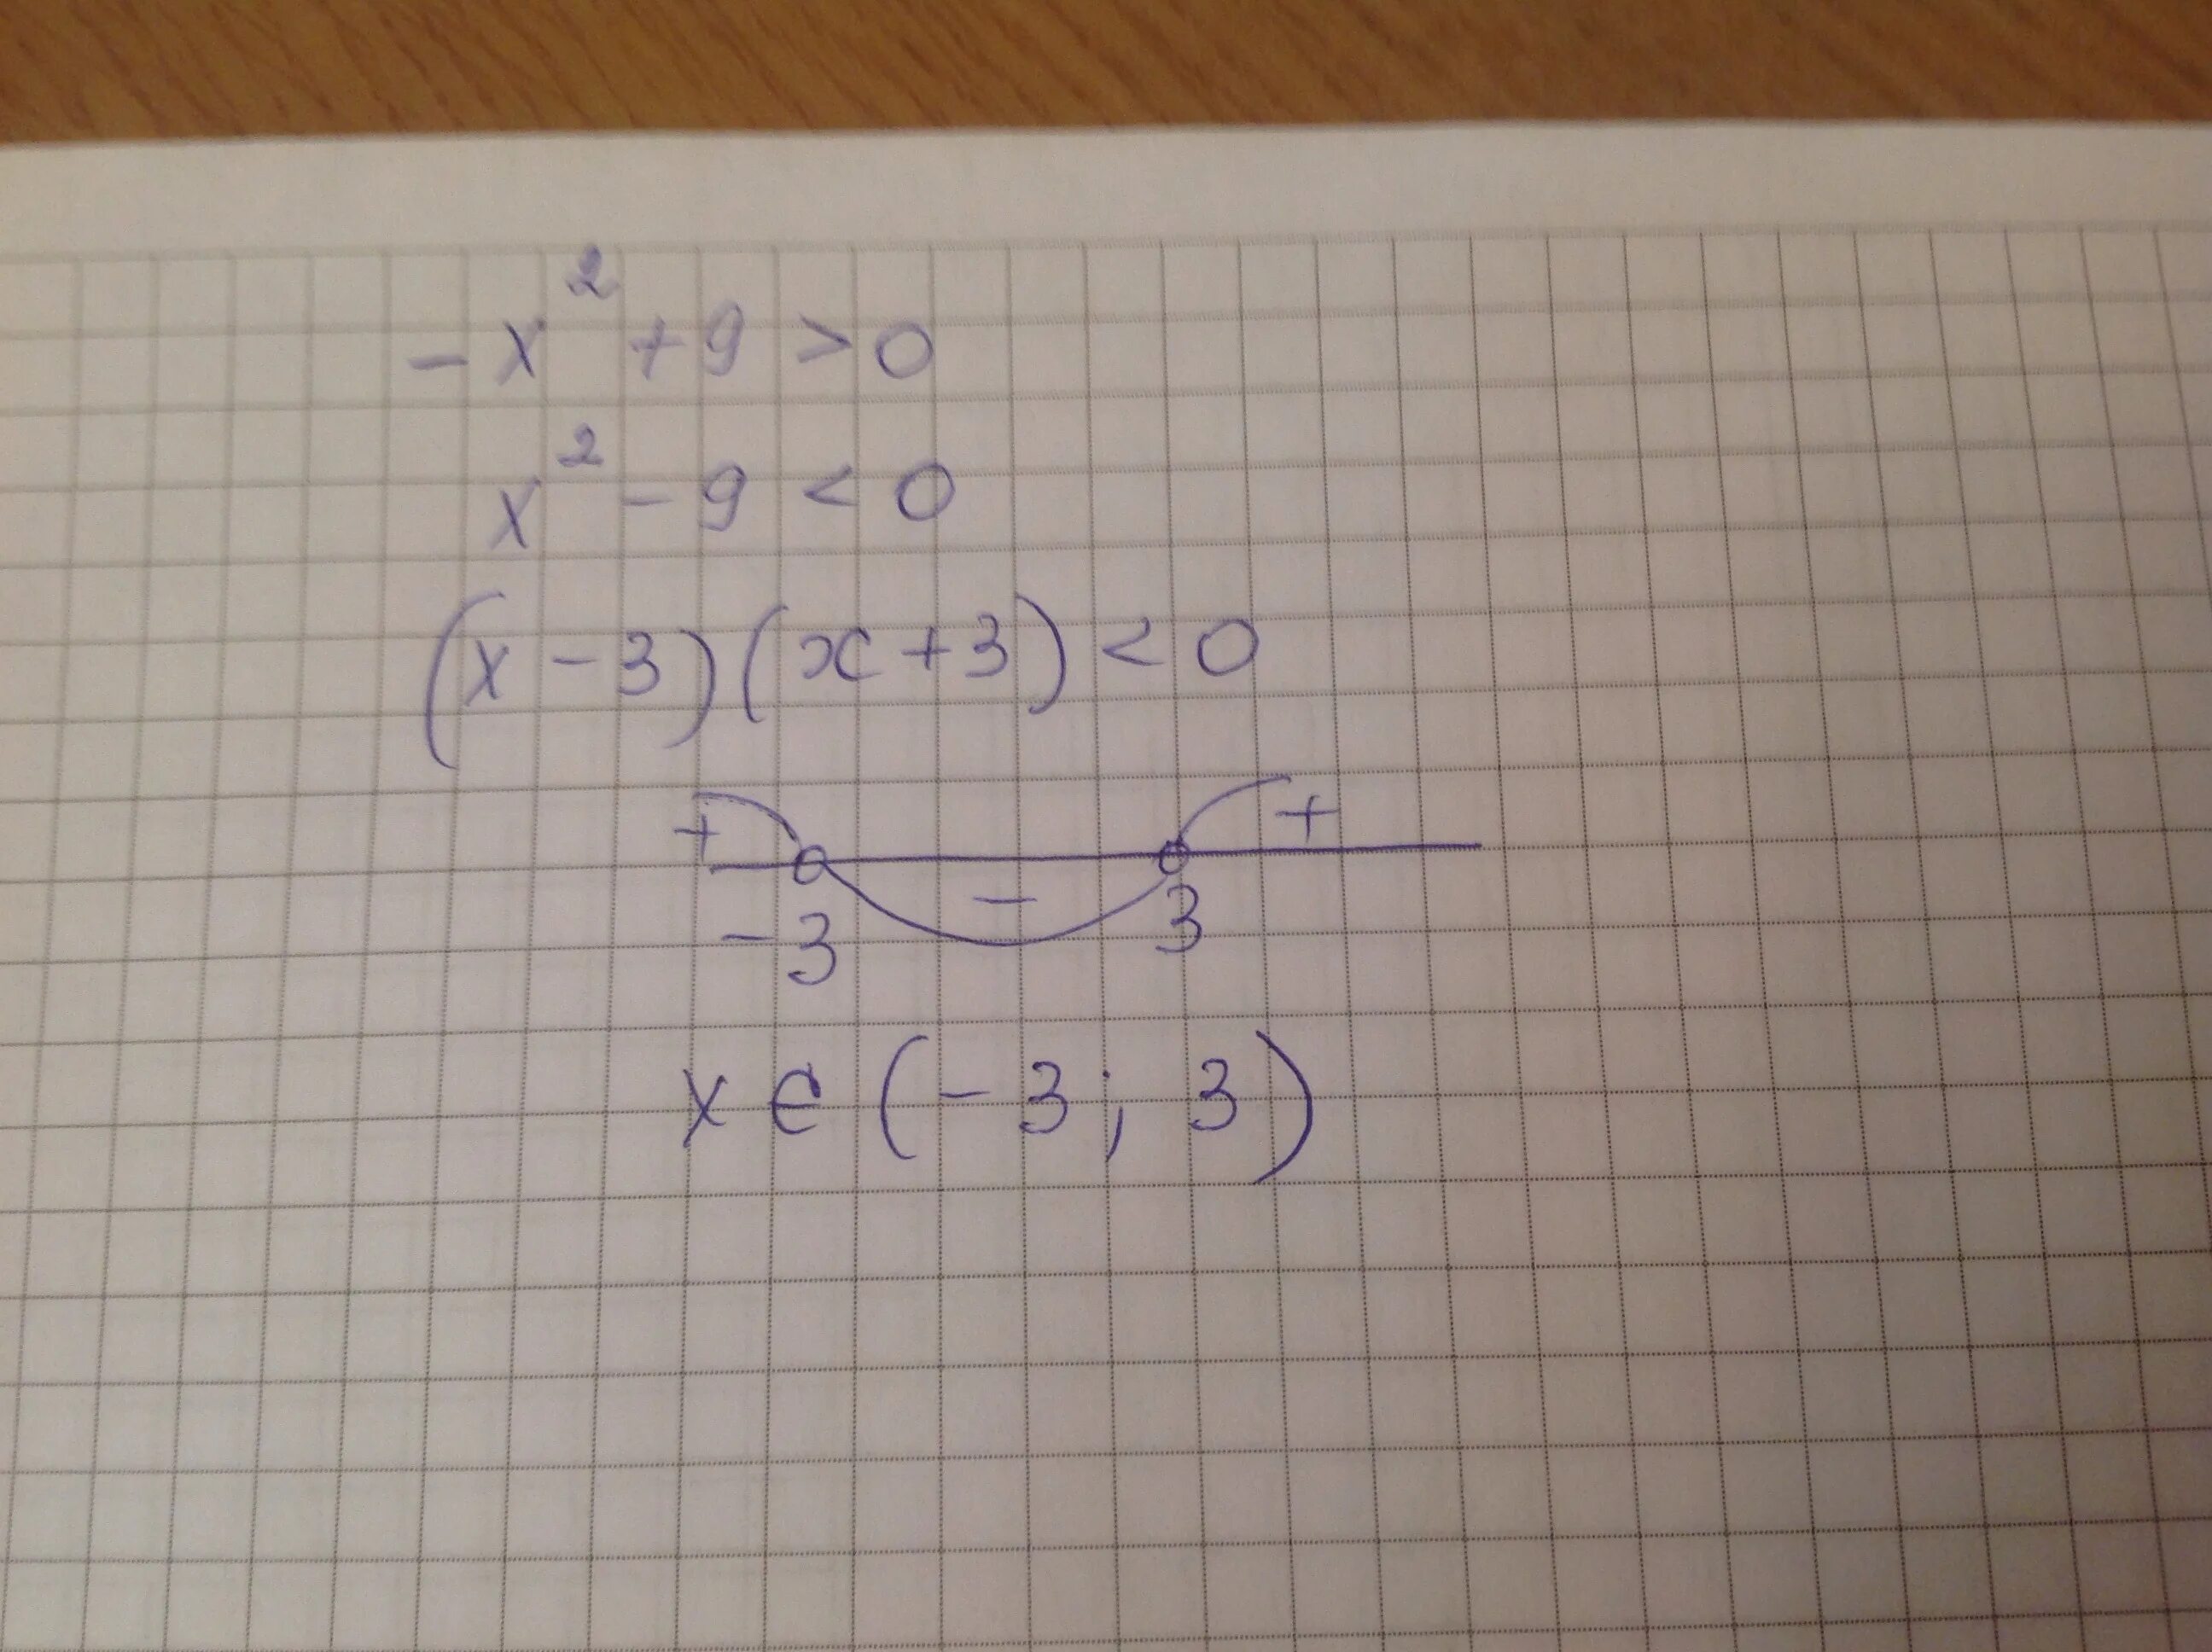 6x 8 ответ. (9x^9)^2. X2-9=0. Неравенство x^2+9<0. 2x 9 решение.